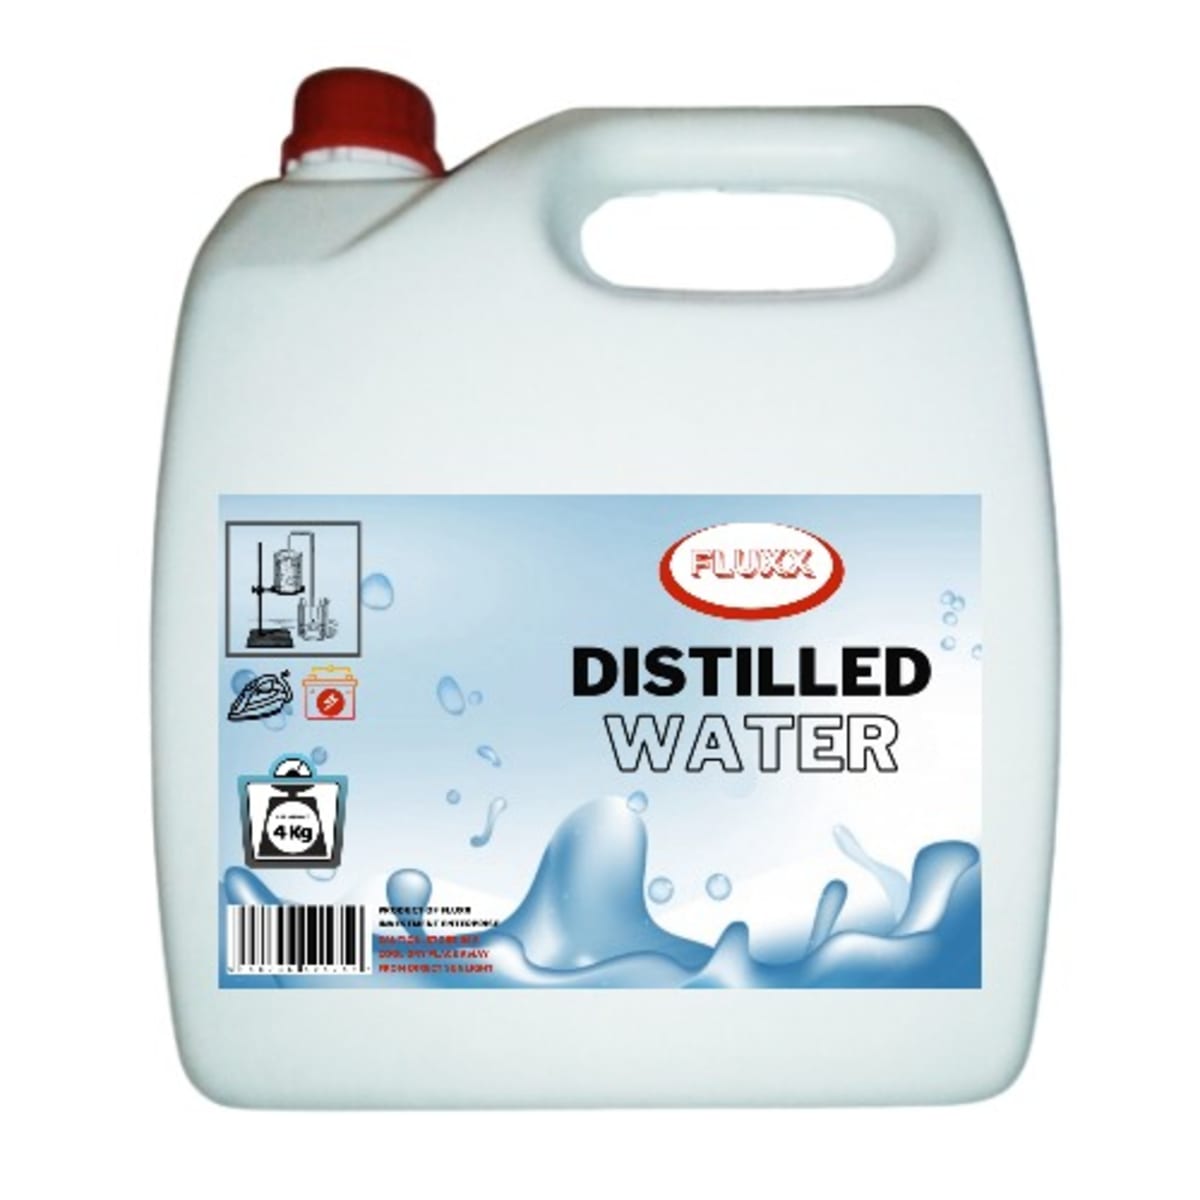 Distilled Water - 4kg  Konga Online Shopping